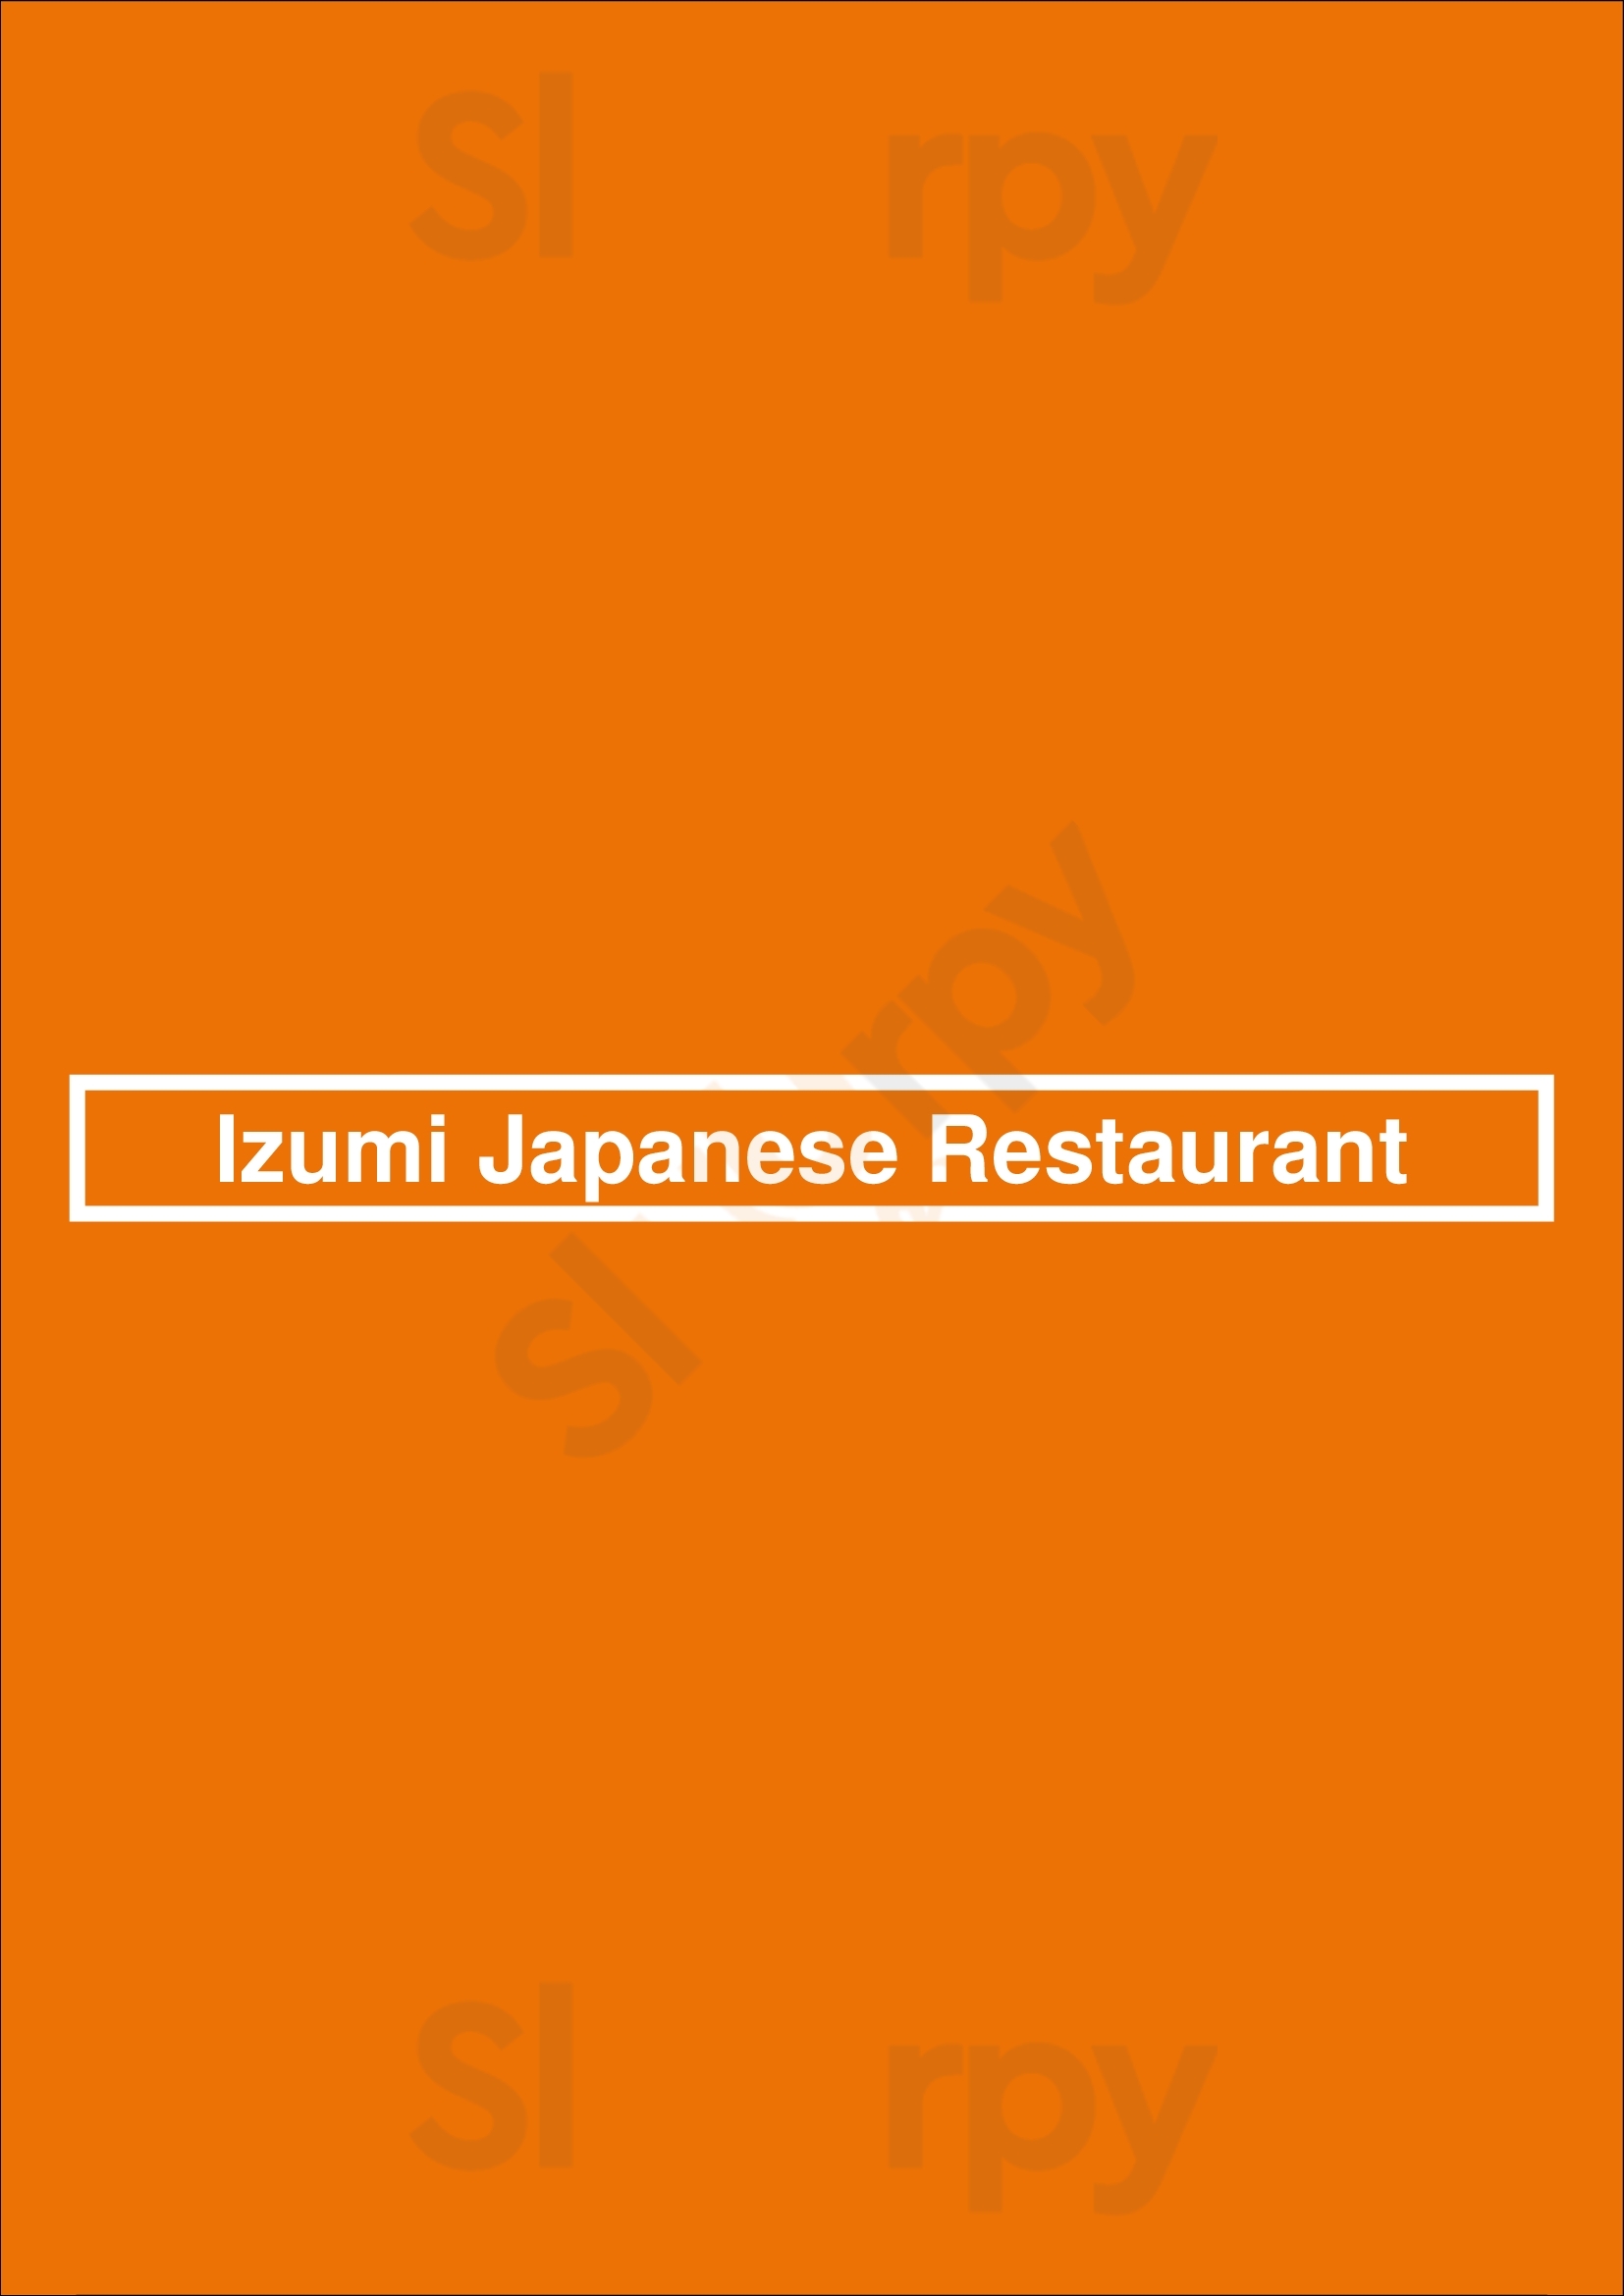 Izumi Japanese Restaurant Aurora Menu - 1